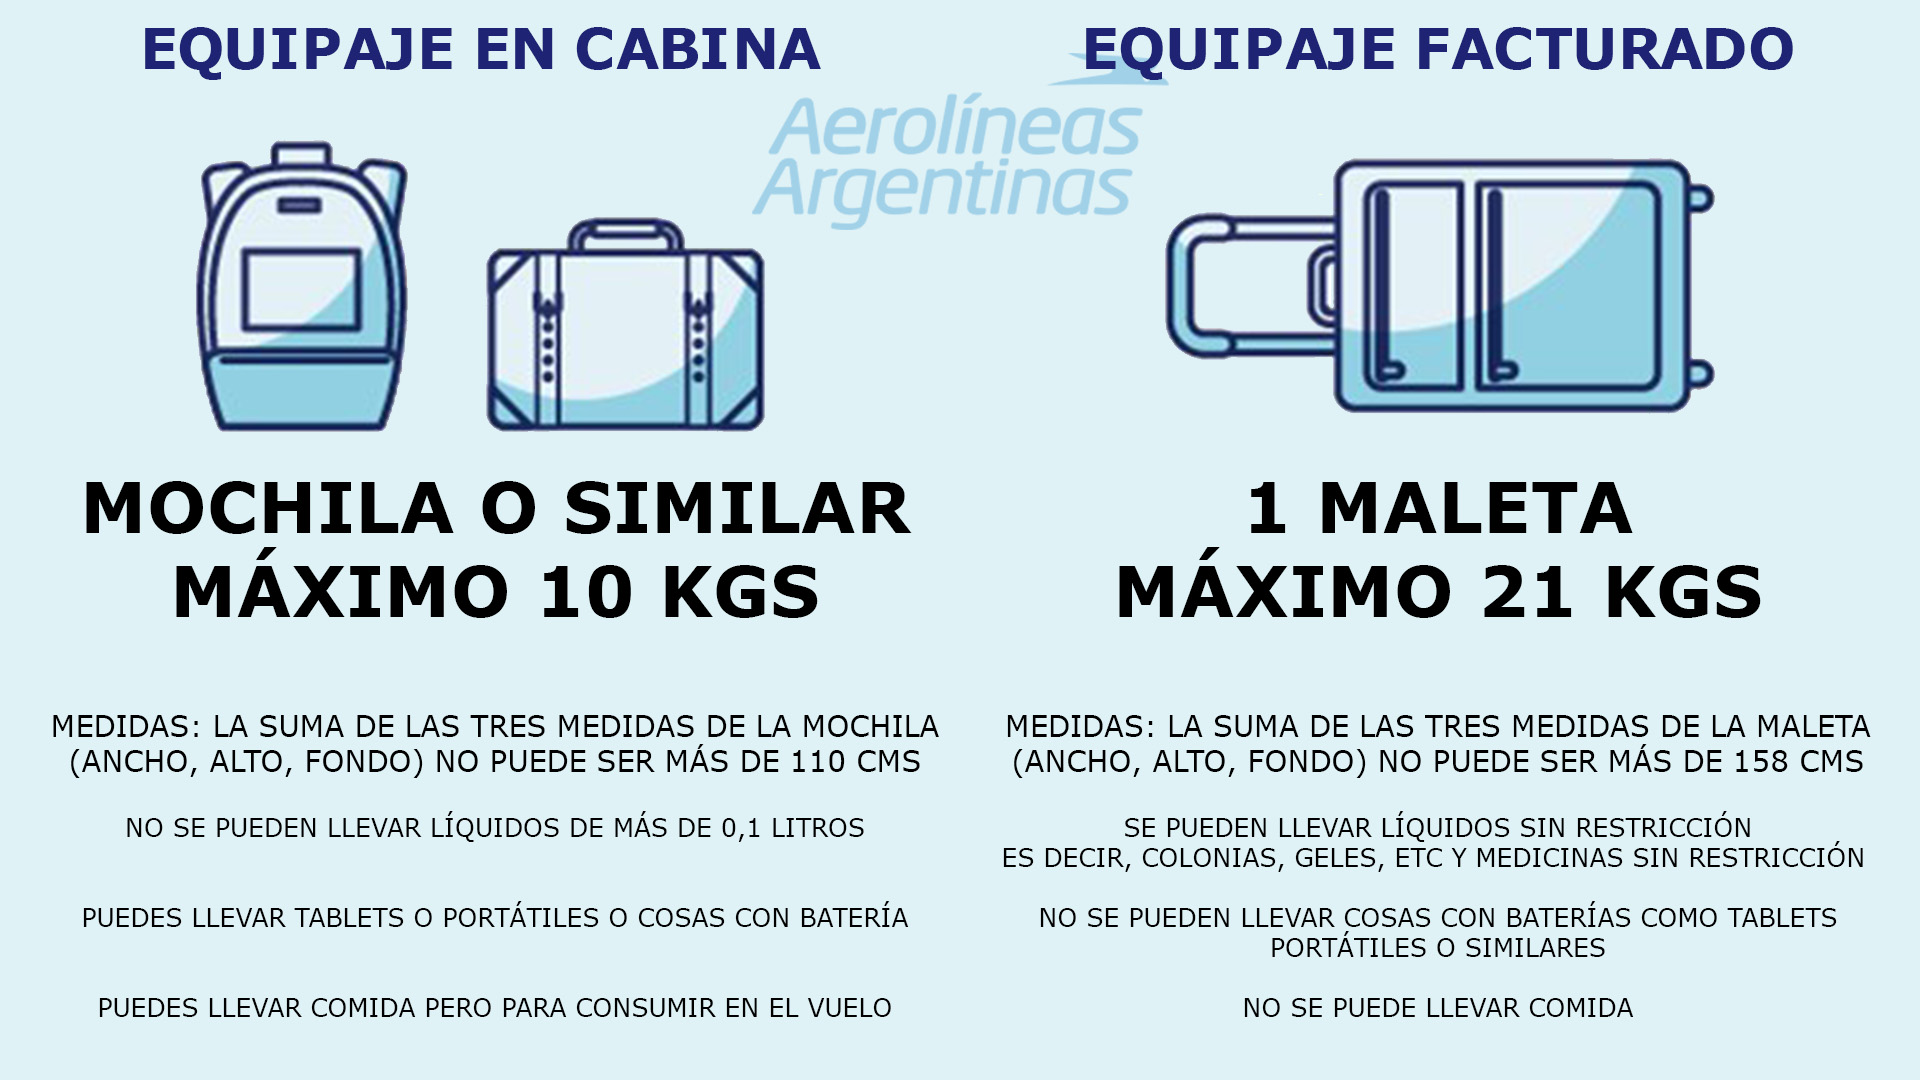 Limitaciones de equipaje de Areolíneas Argentinas